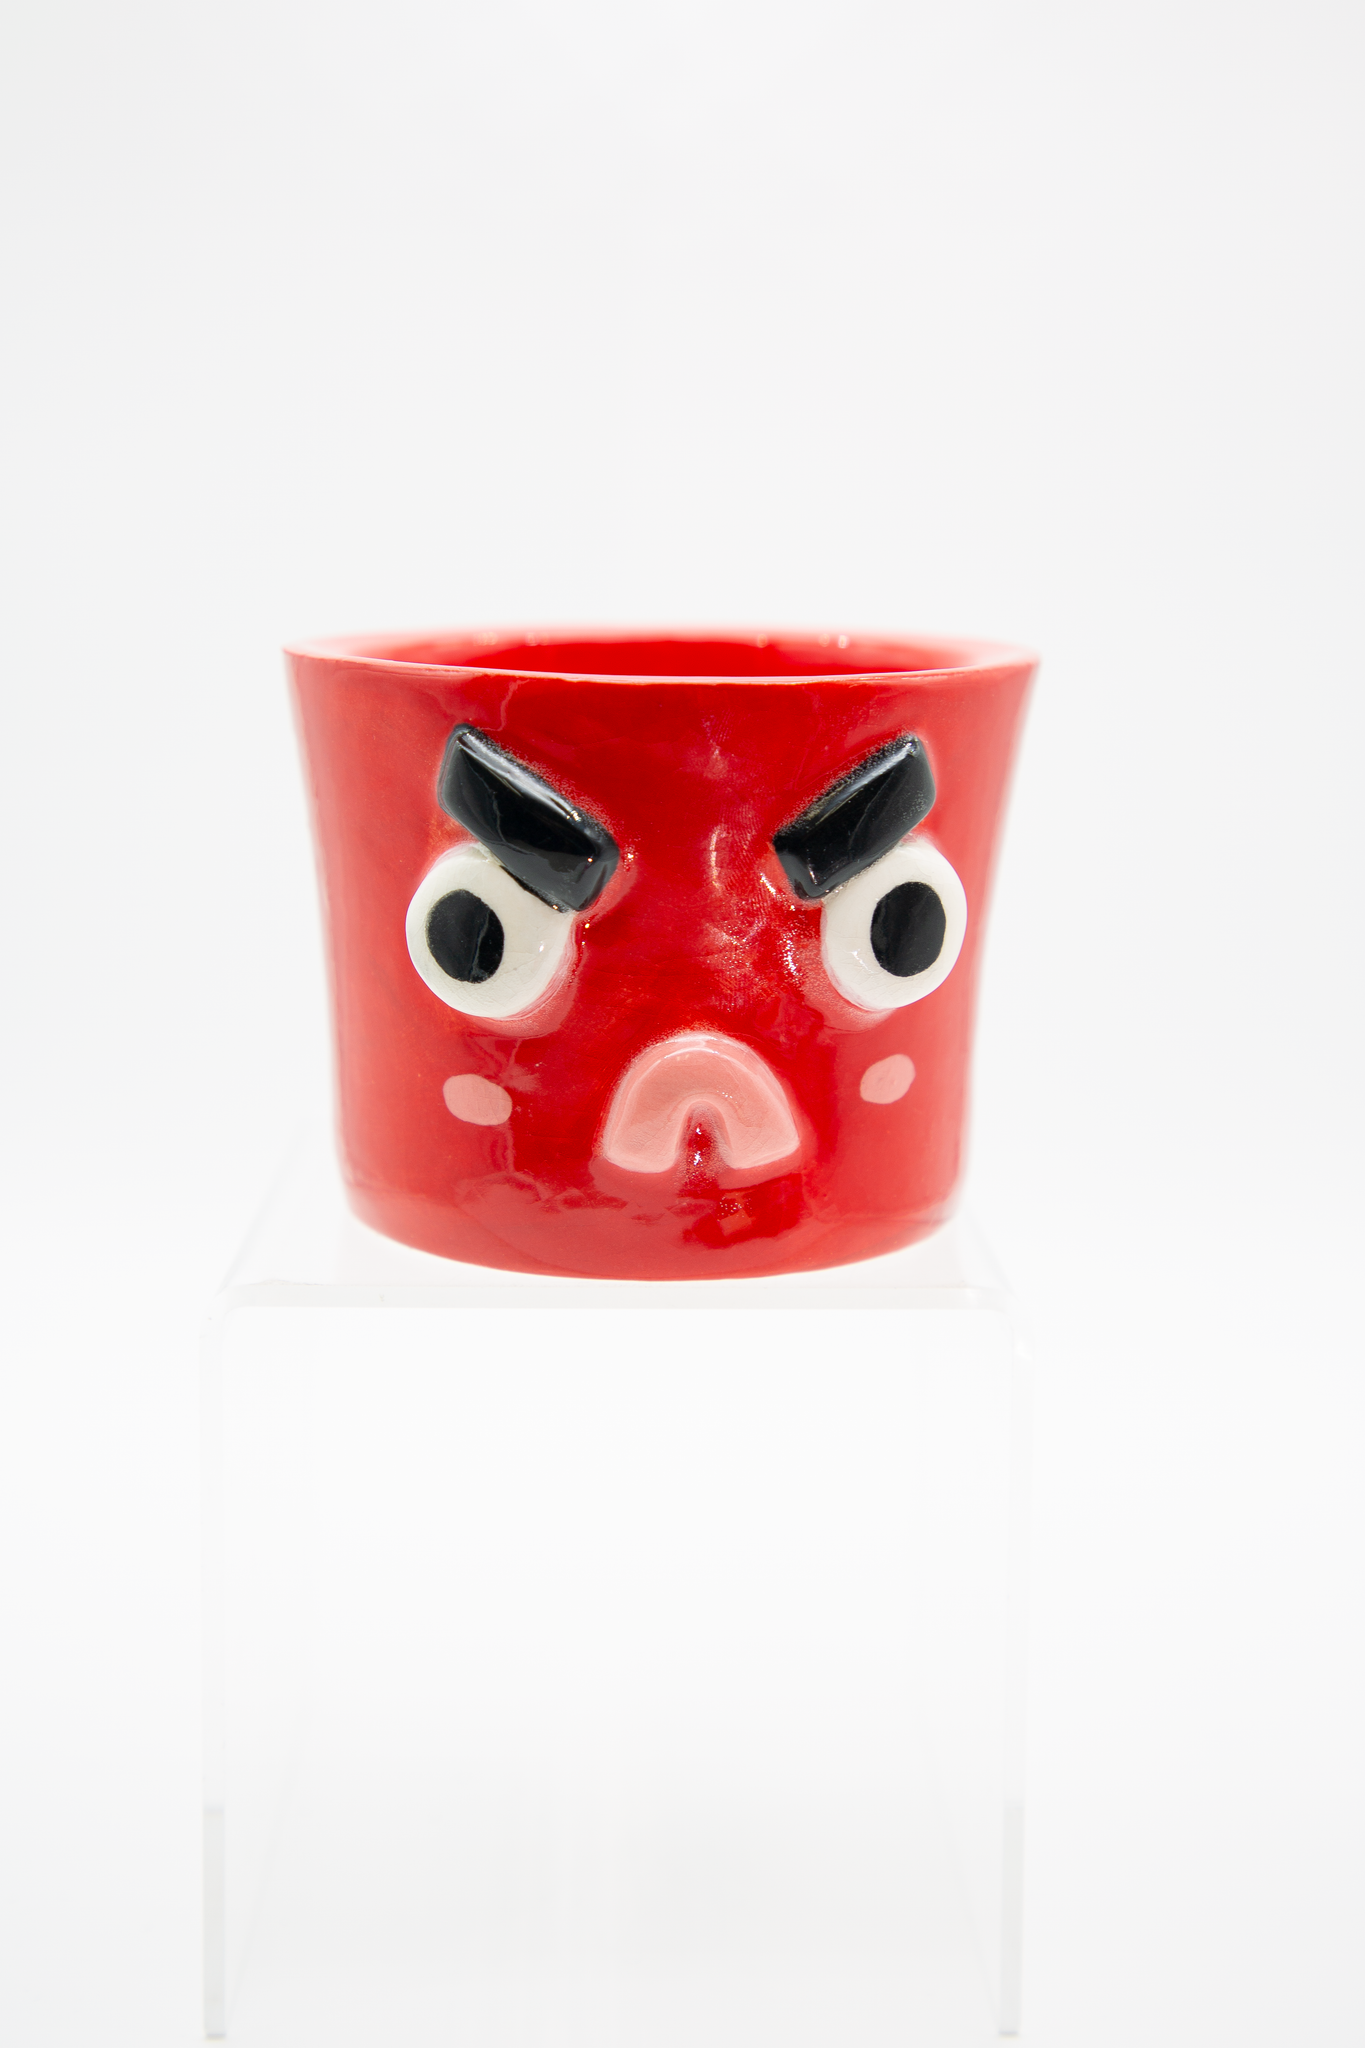 Red Anger Ceramic Bowl by Alana Bohni